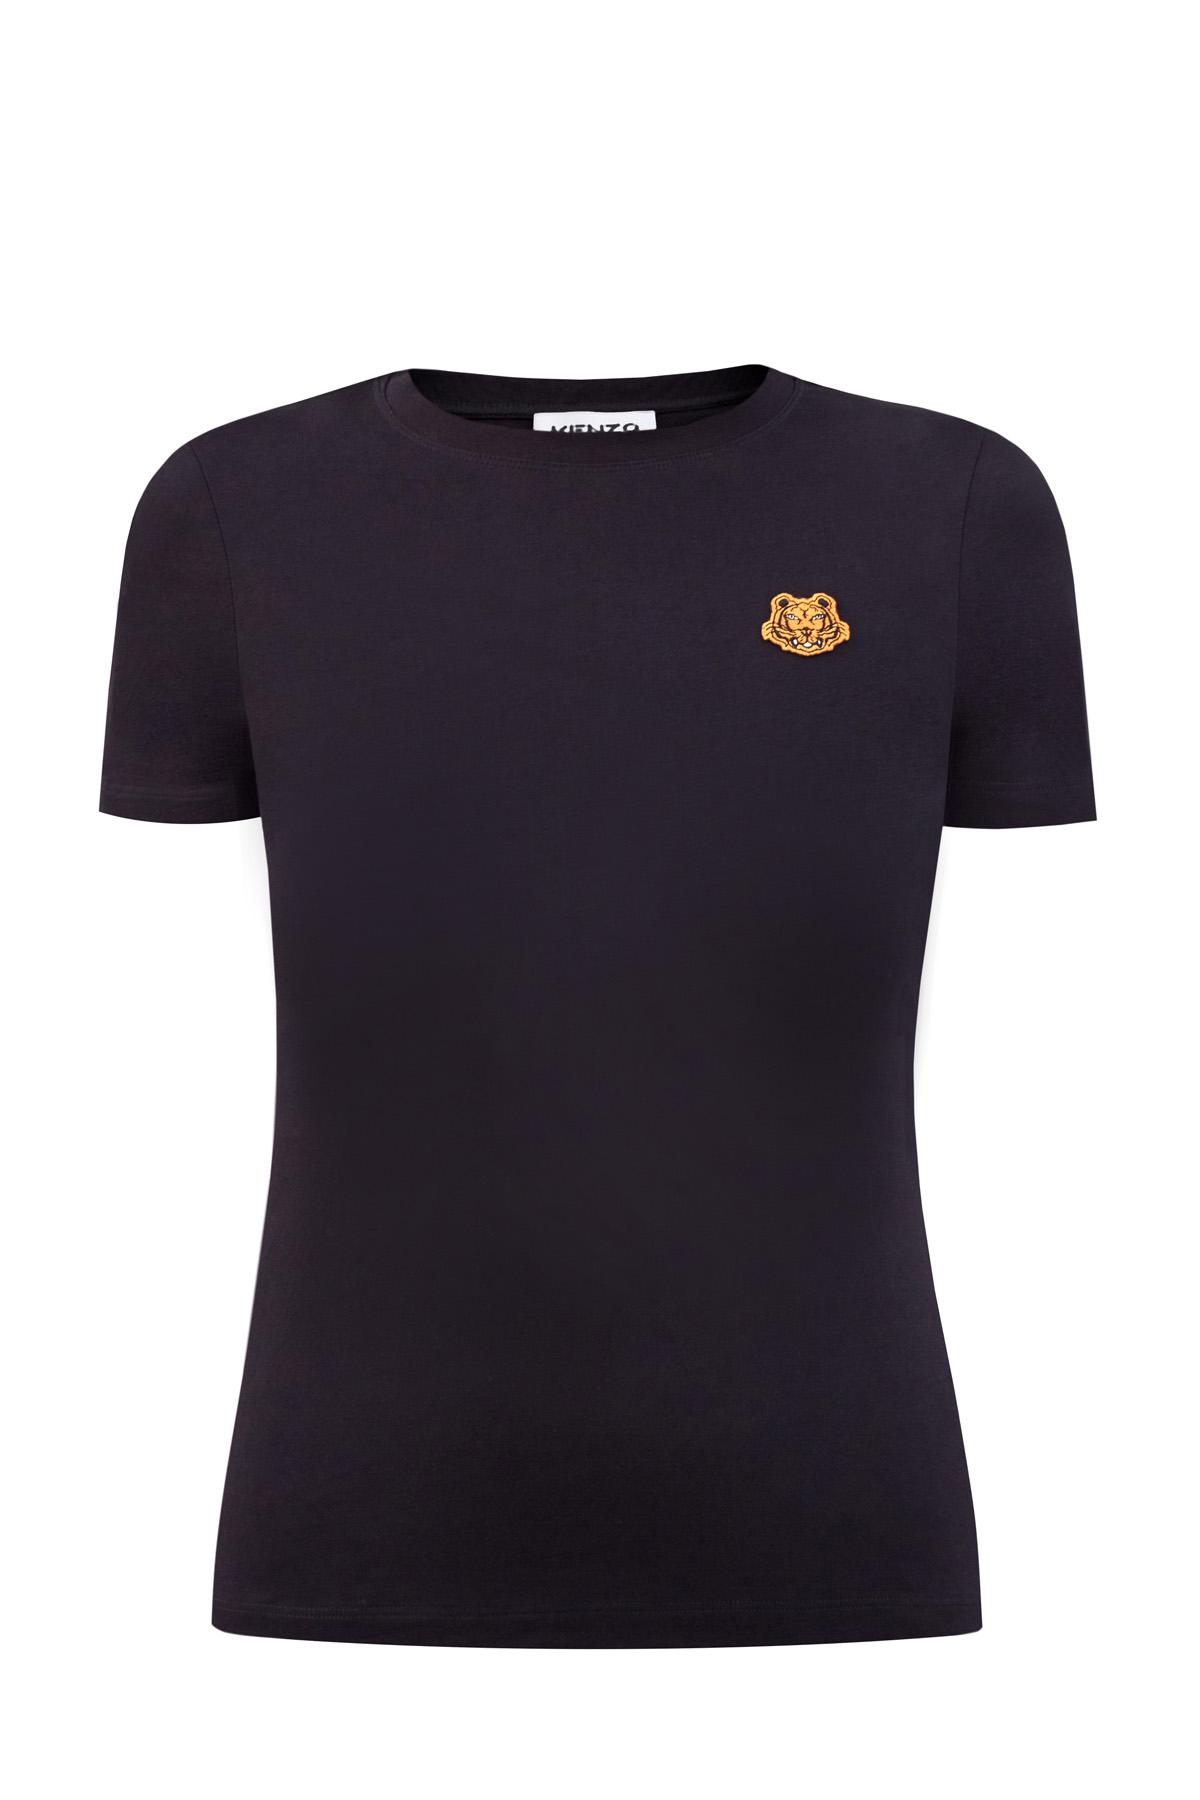 Хлопковая футболка из гладкого джерси с вышитой эмблемой бренда KENZO, цвет черный, размер S;M;L;XS - фото 1